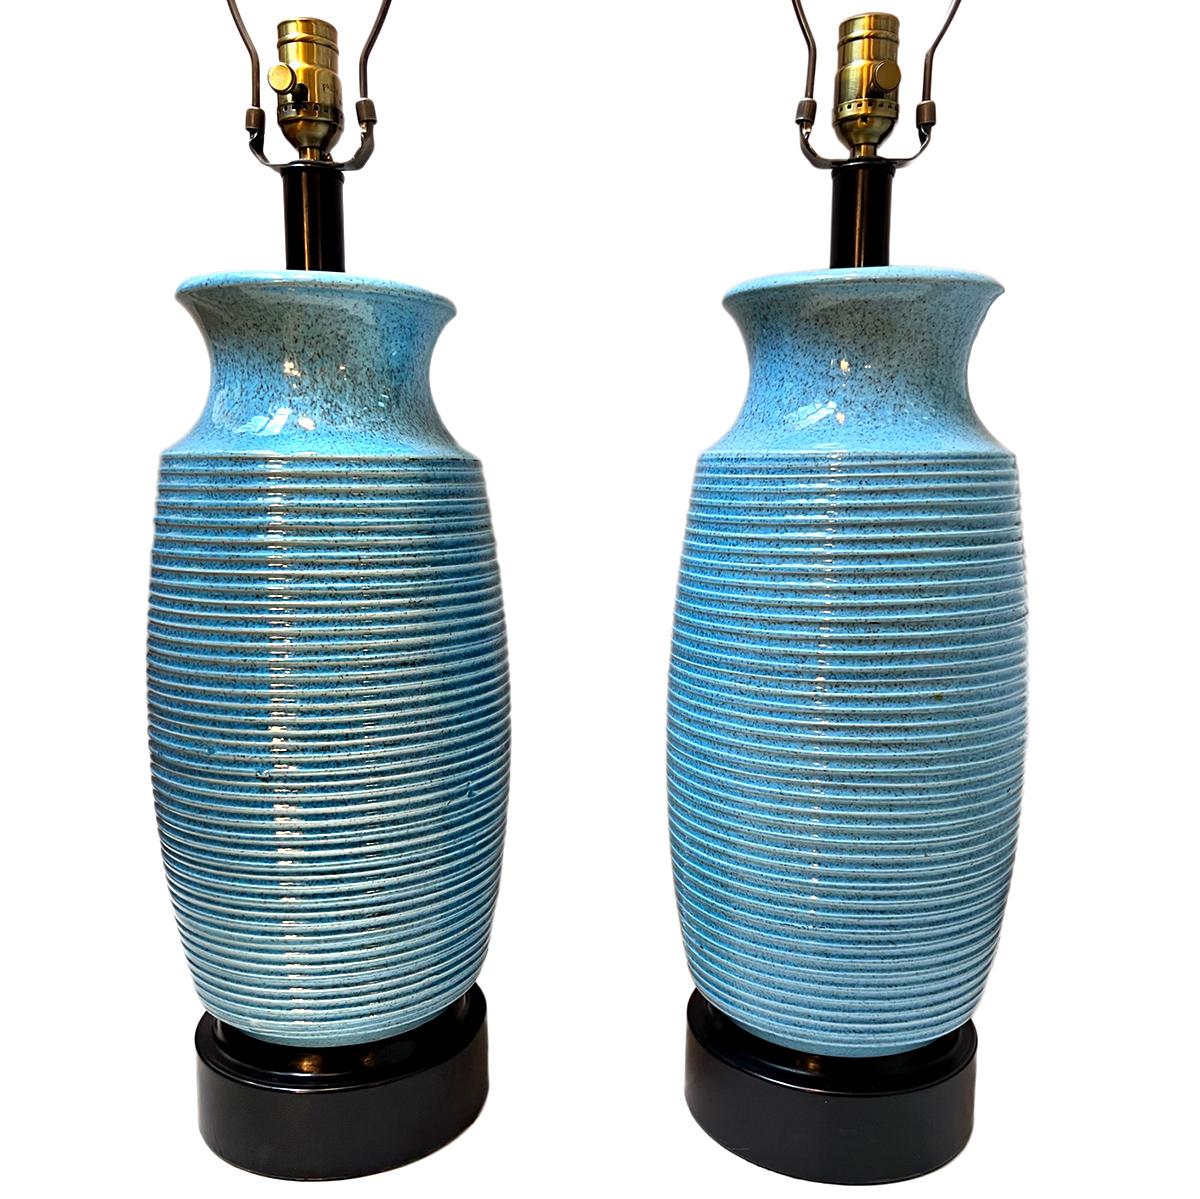 Paire de lampes de table en porcelaine italienne datant des années 1950.

Mesures :
Hauteur du corps : 21